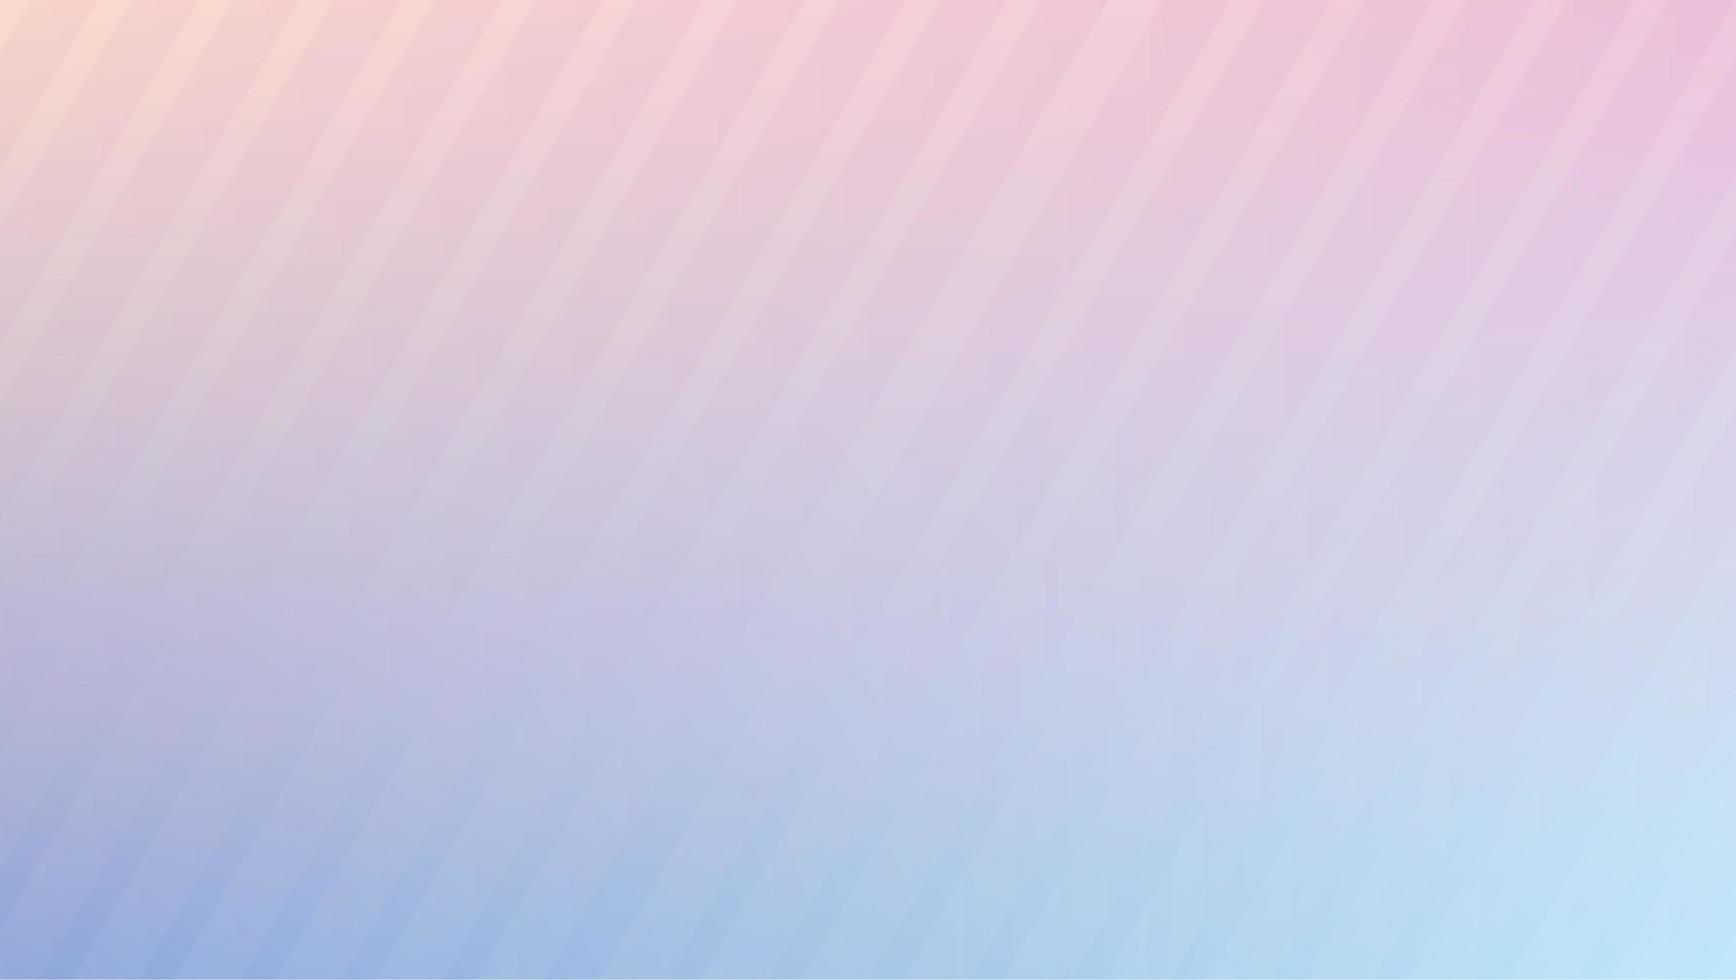 imagen de fondo abstracta de gradación rosa claro y azul claro con líneas oblicuas foto